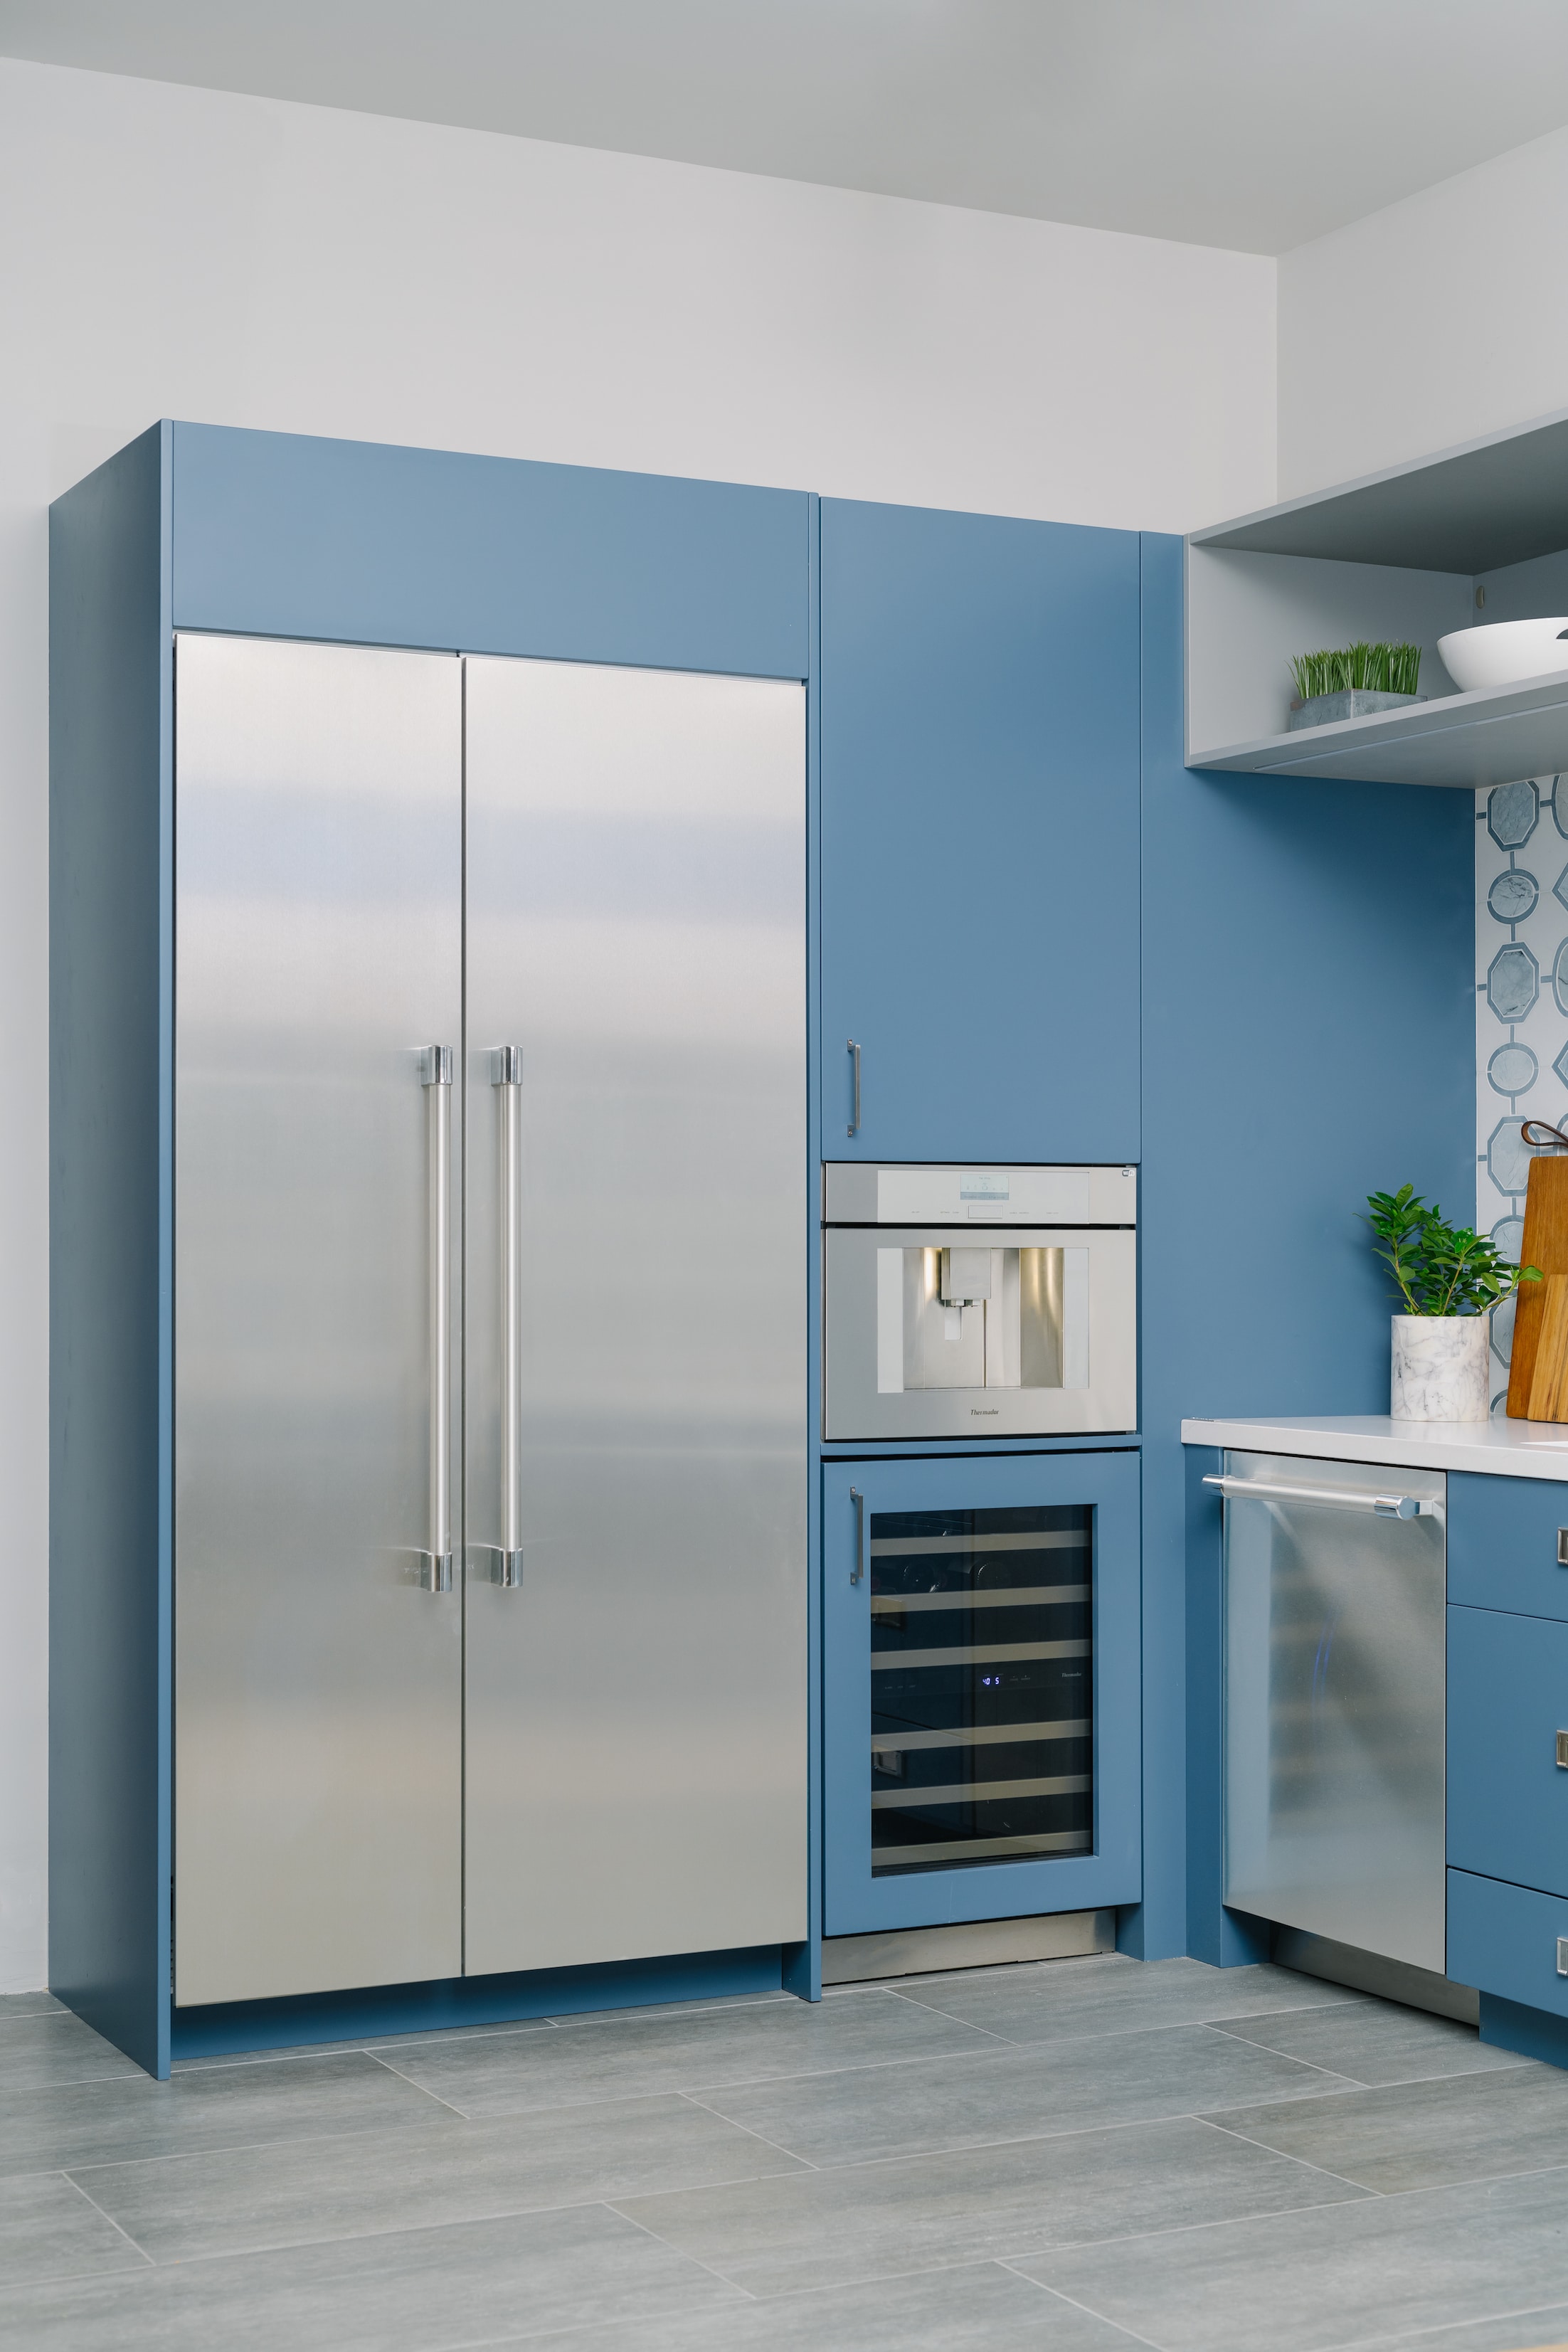 Pro-23_5-inch-refrigeration-problue-kitchen-vignette1.jpg